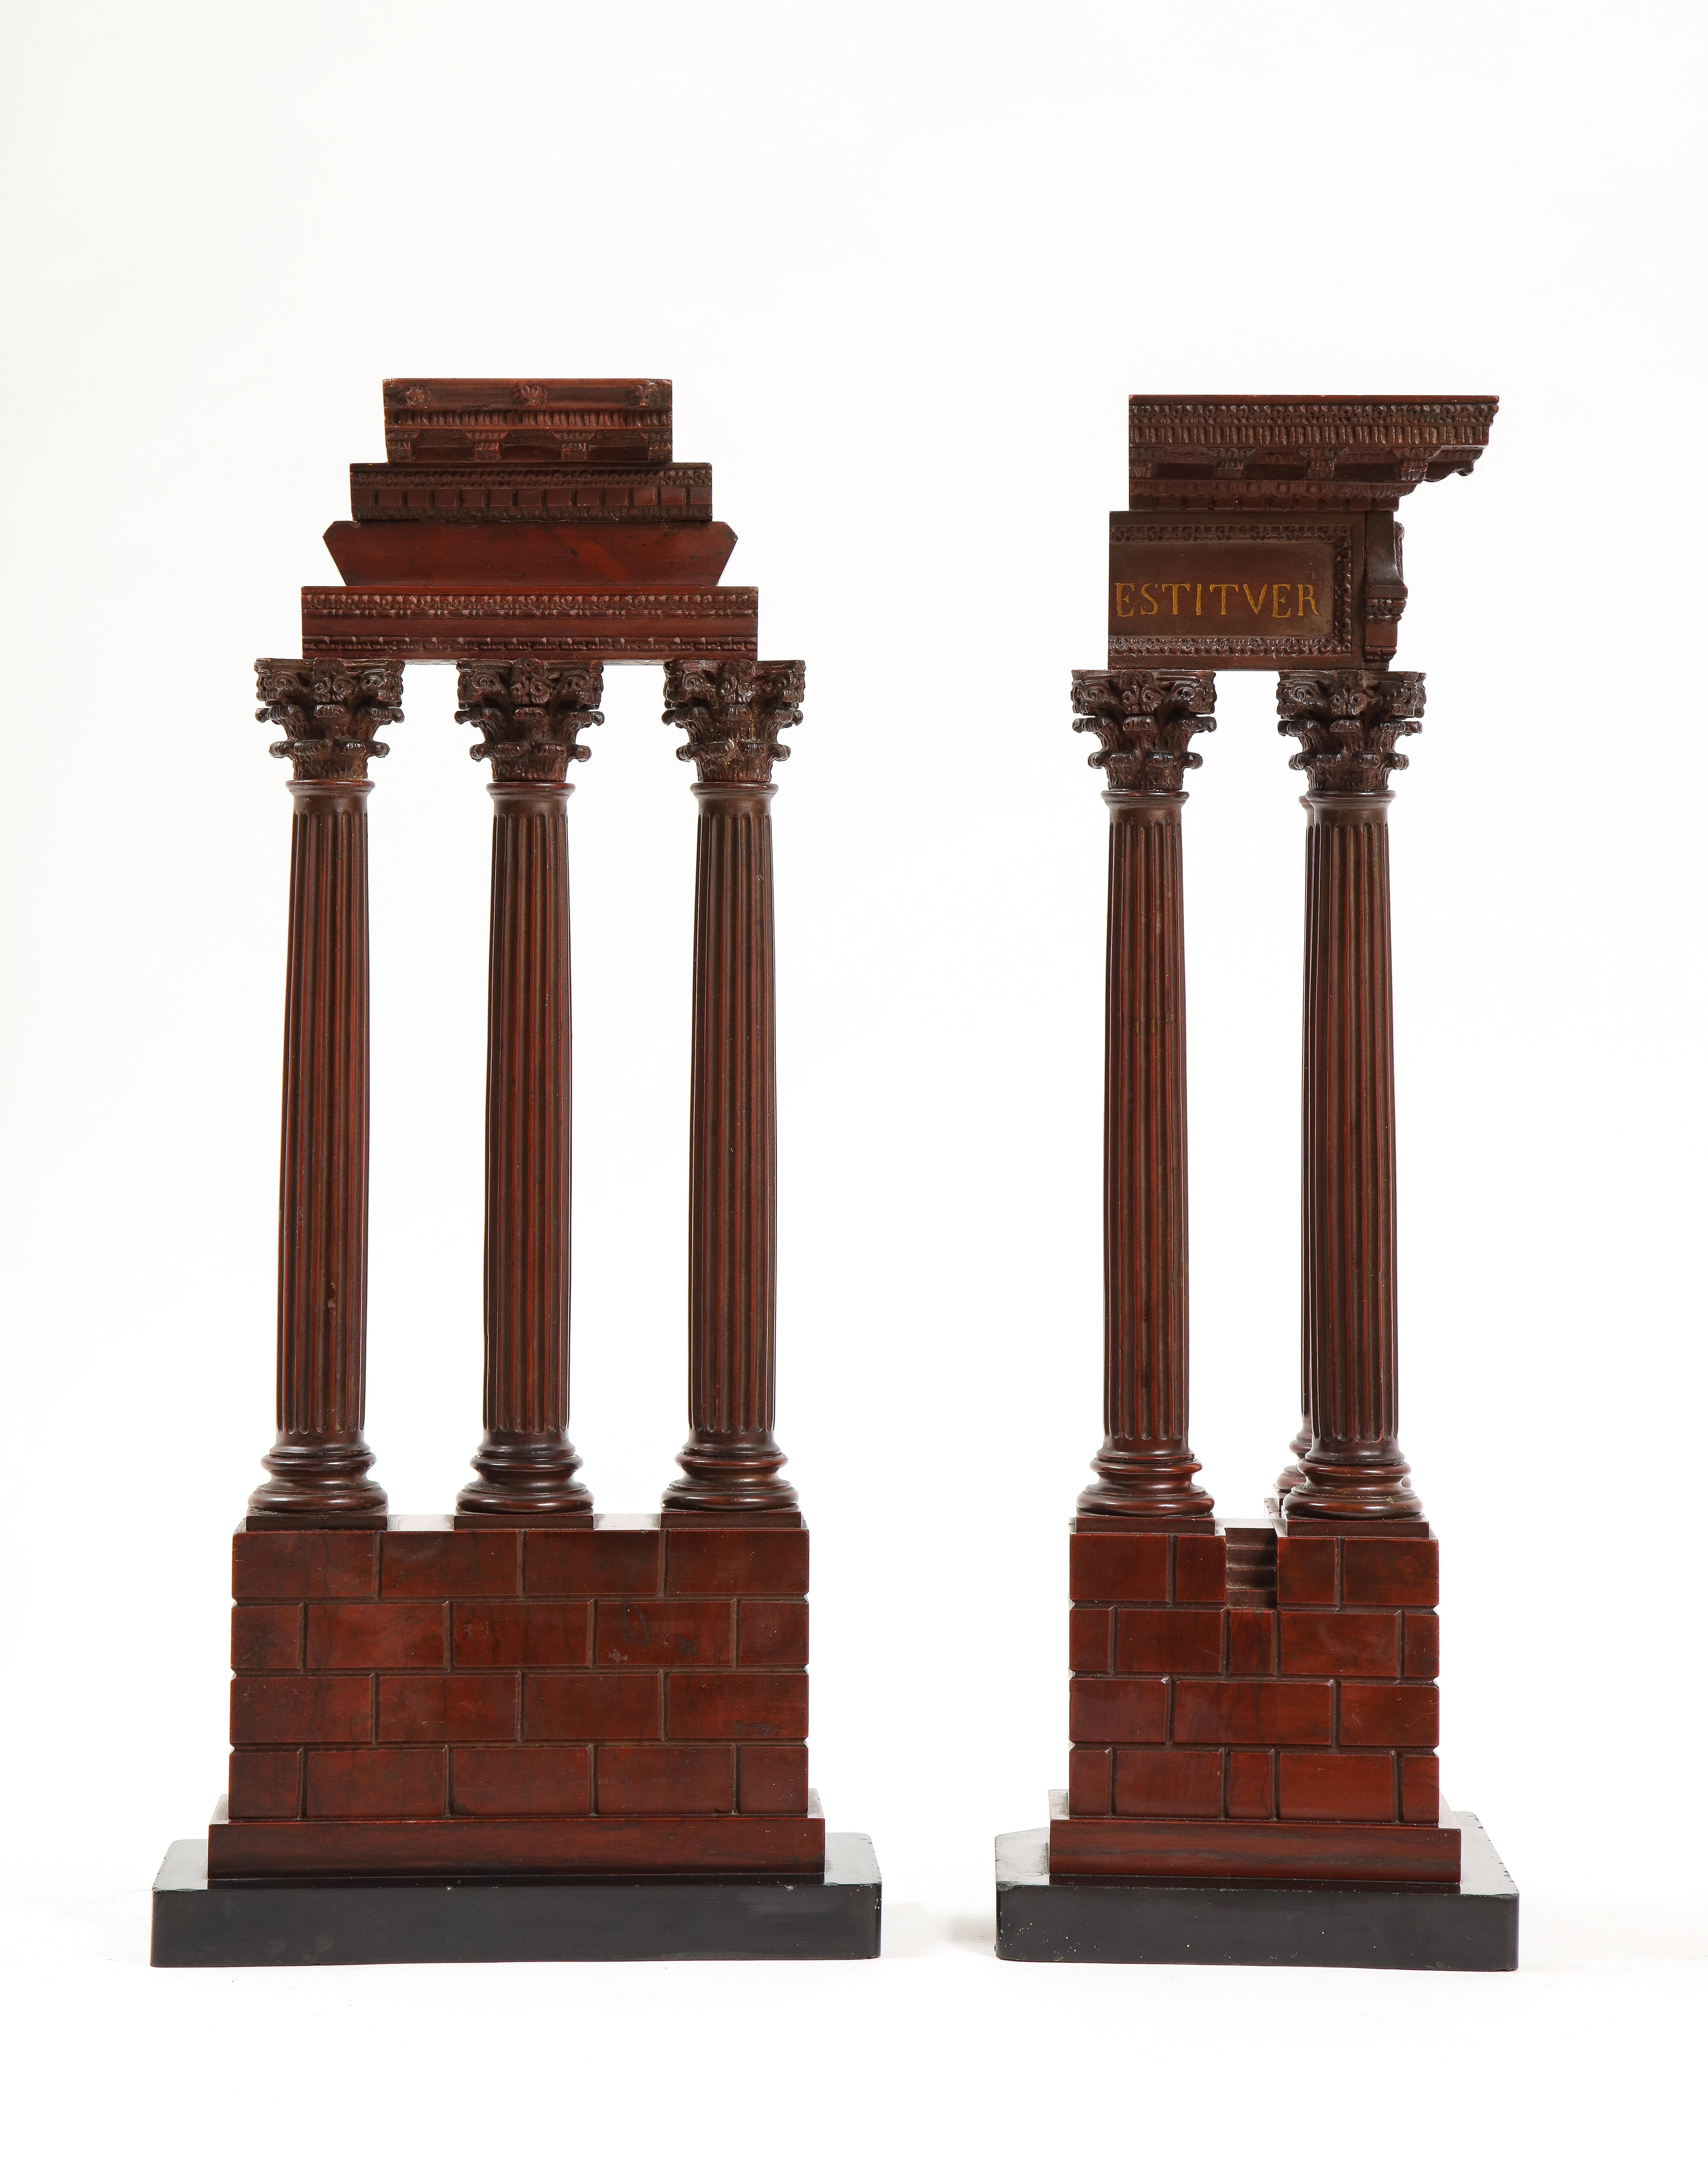 Ein großes und unglaubliches Paar 'Grand Tour'-Modelle aus rotem Marmor von Ruinen, die die korinthische Ordnung zelebrieren und höchstwahrscheinlich der Werkstatt von Benedetto Boschetti zugeschrieben werden.  Der erste Tempel auf der linken Seite